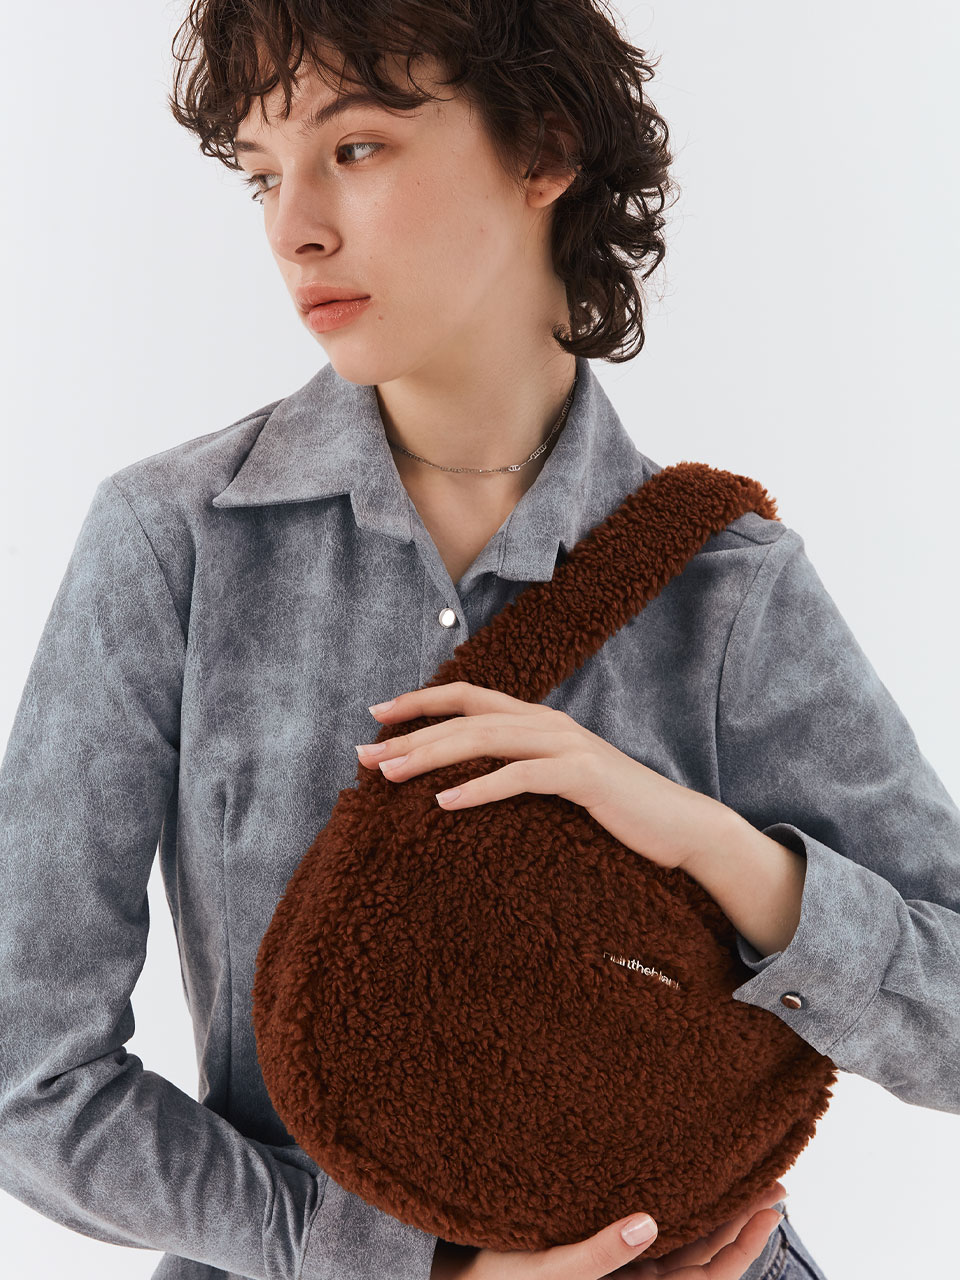 Furry Shoulder Bag (brown)